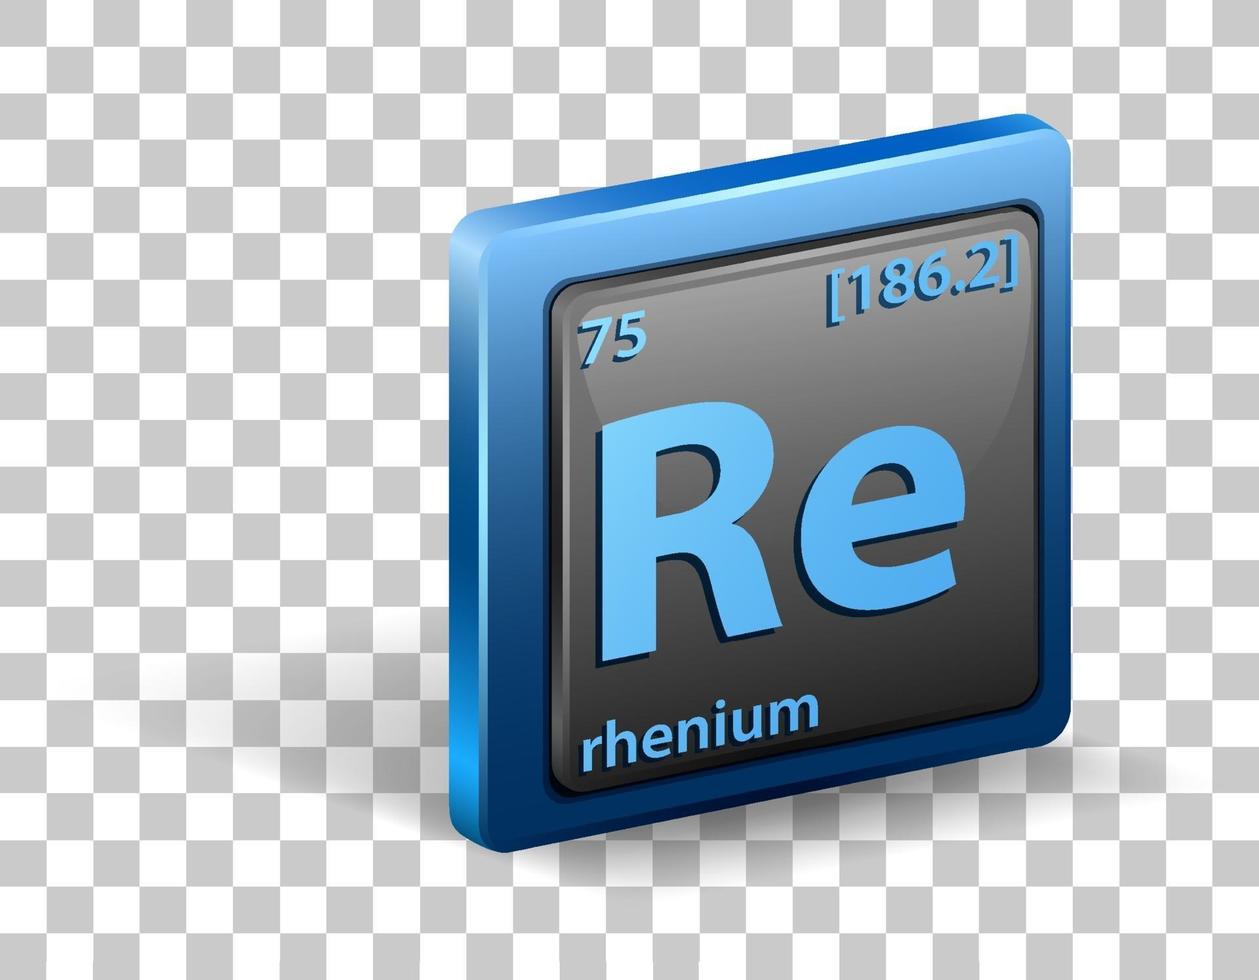 élément chimique rhénium. symbole chimique avec numéro atomique et masse atomique. vecteur